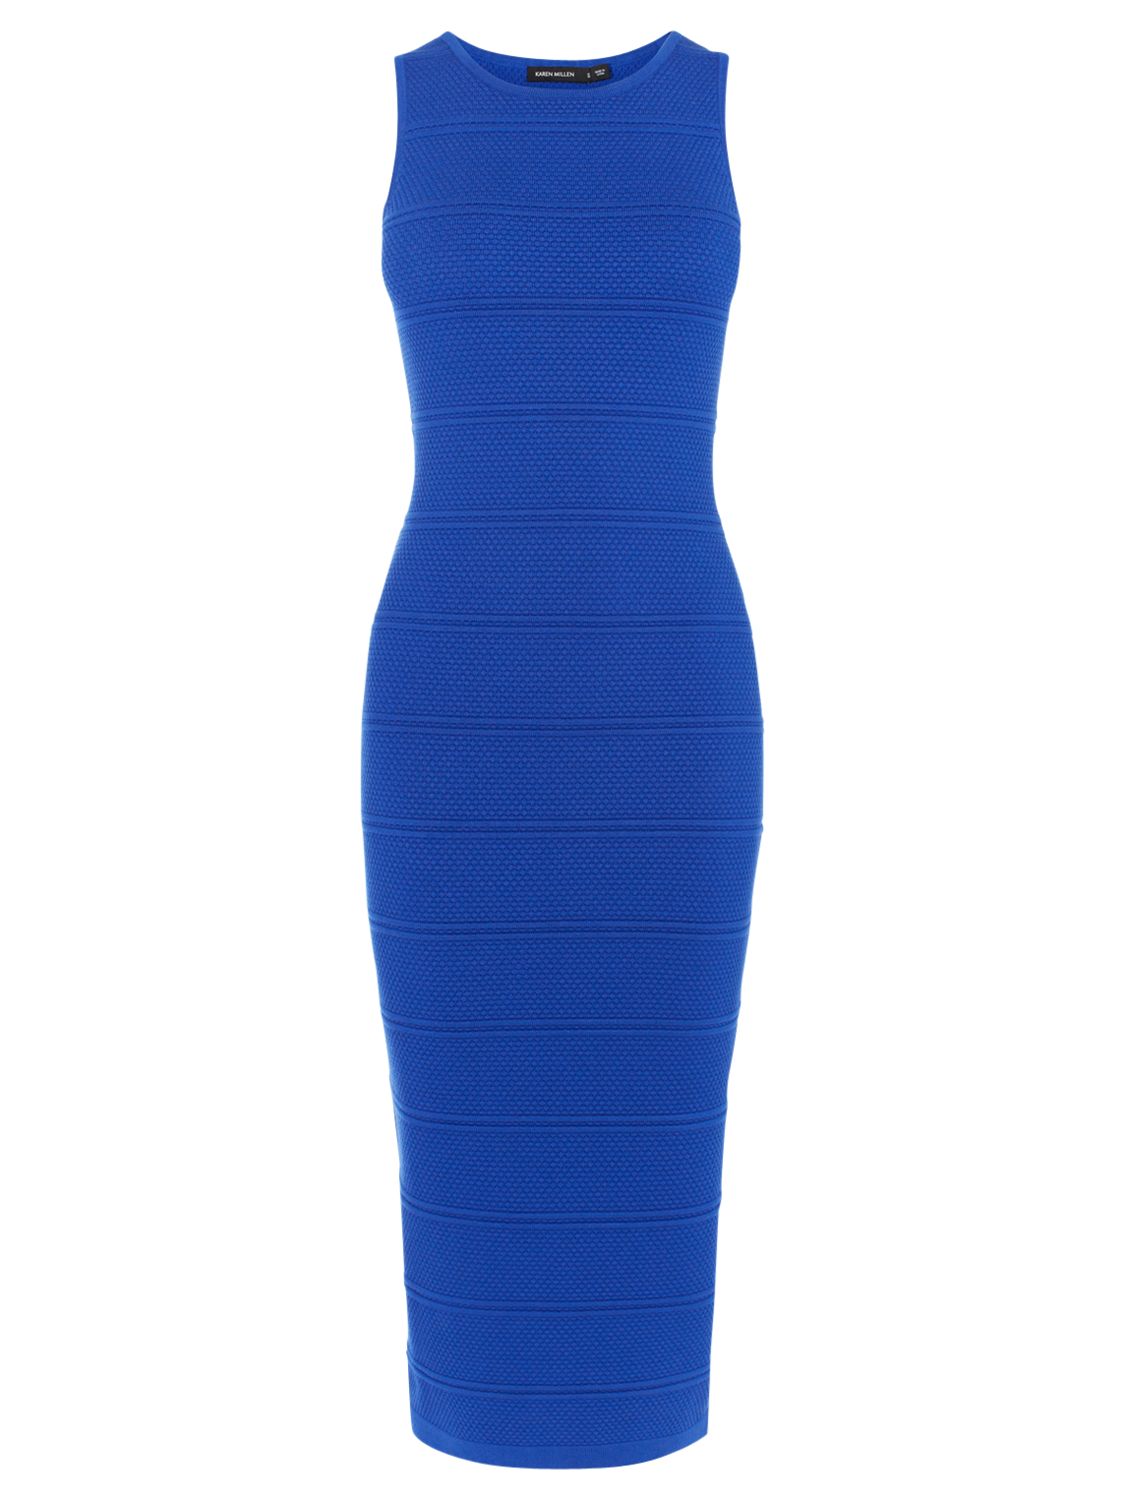 Karen Millen Stitch Stripe Dress, Blue/Multi